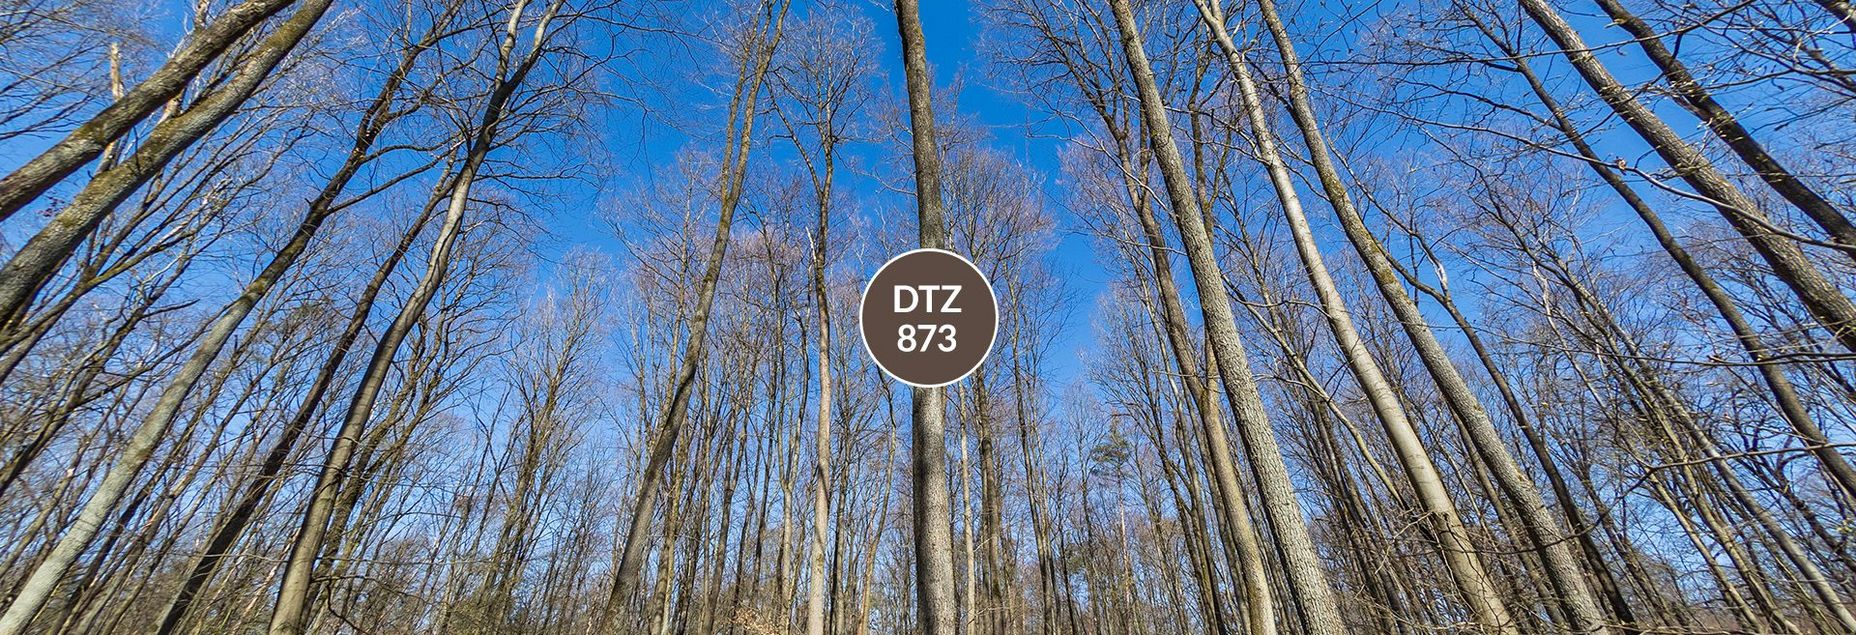 DTZ 873 - Baum